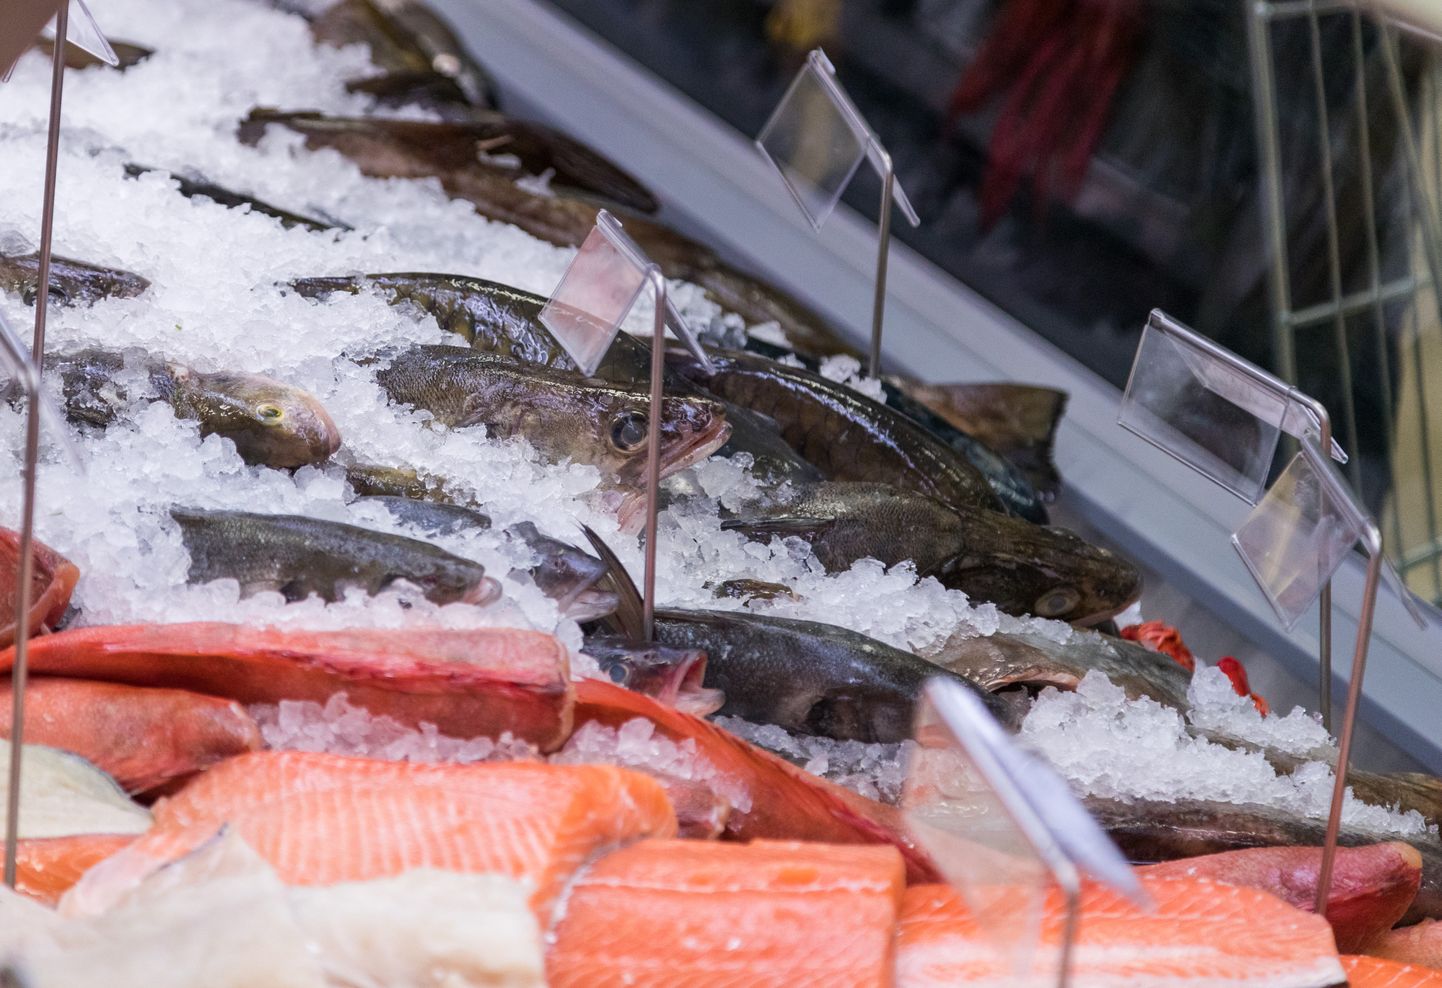 Osta tasub vaid seda kala, mille päritolu on teada ning vastavus tervisenõuetele on samuti selgelt välja toodud.